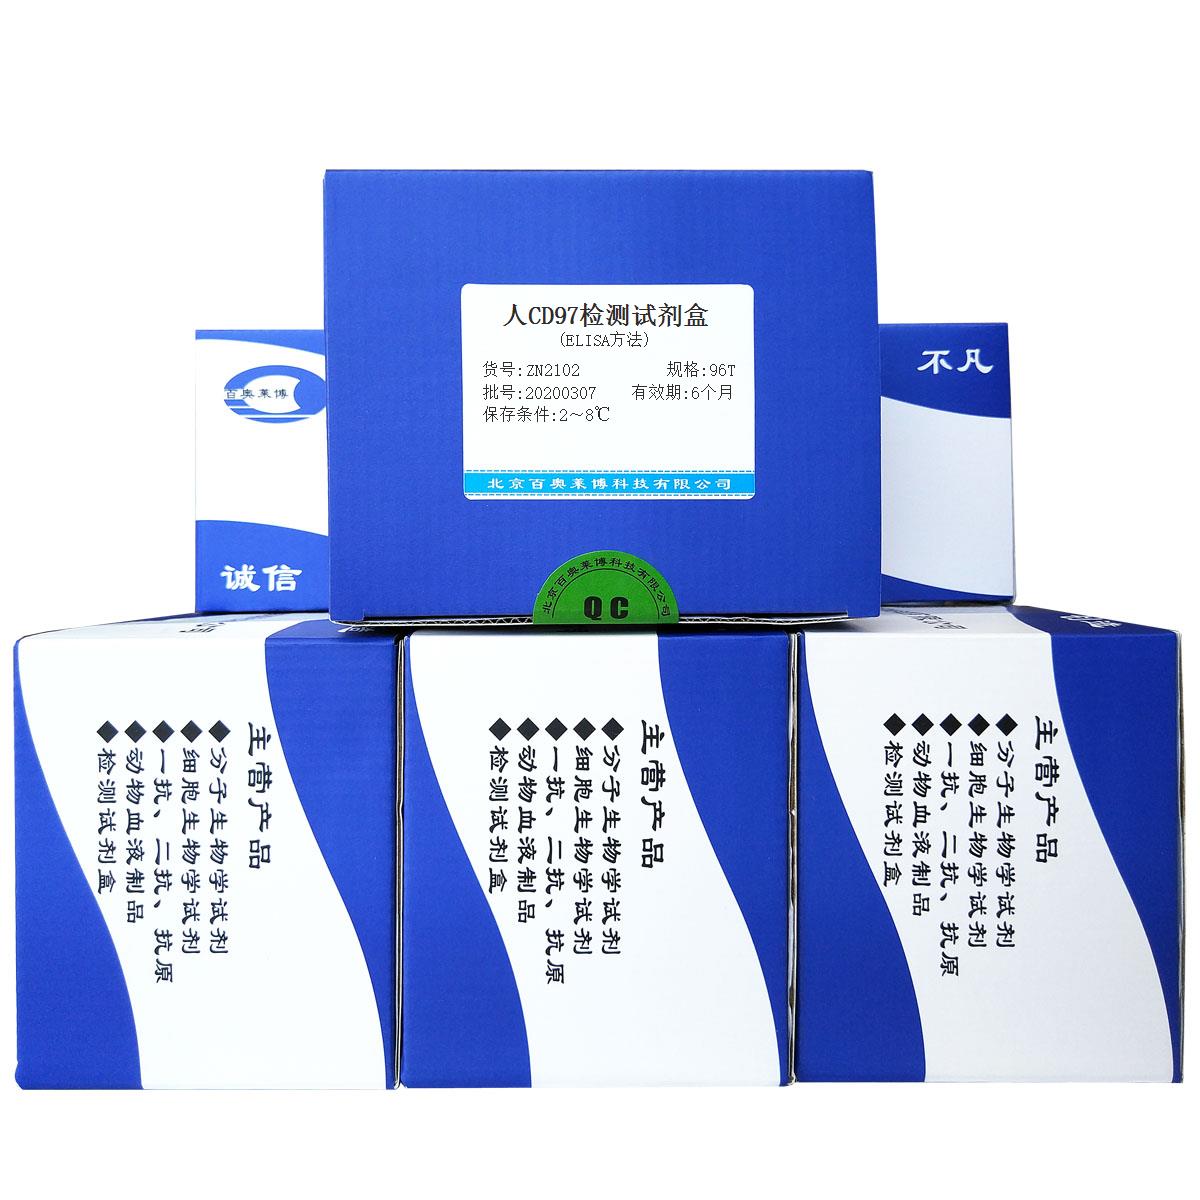 人CD97检测试剂盒(ELISA方法)北京现货